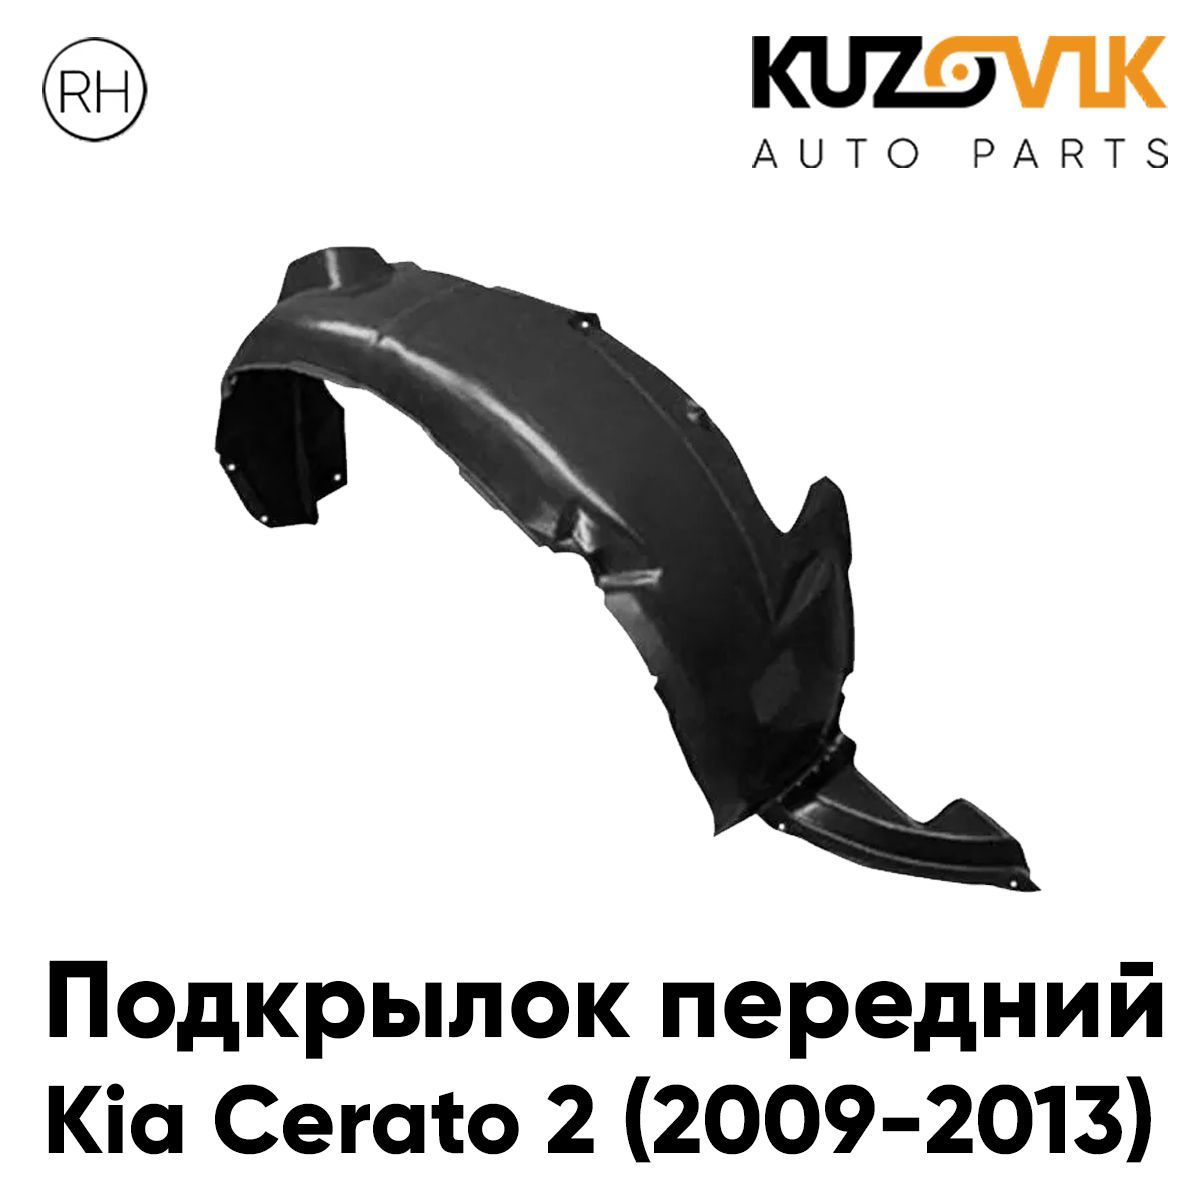 Подкрылок Kuzovik передний для Киа Церато Kia Cerato 2 (2009-2013) правый KZVK5720046976